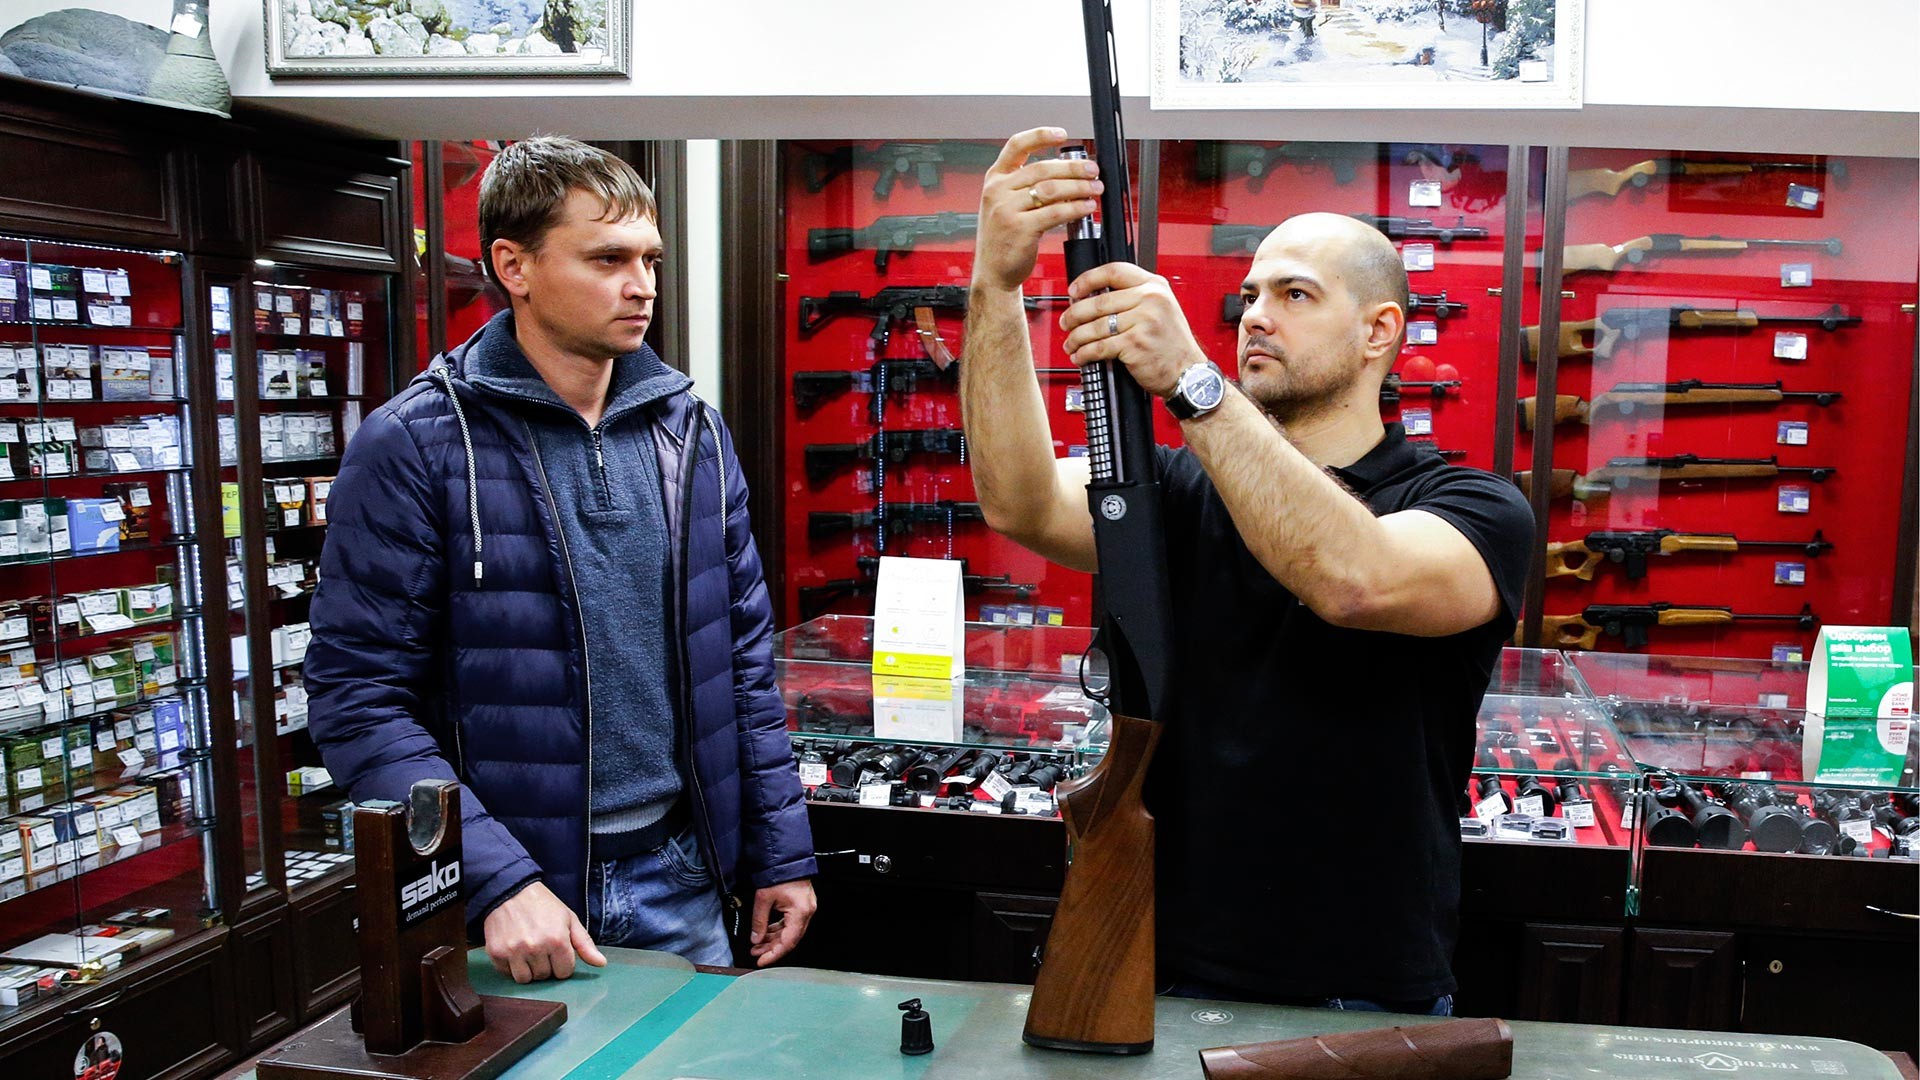 Penjual menunjukkan senapan semi otomatis HUGLU GX 512 di toko senjata Tiger.